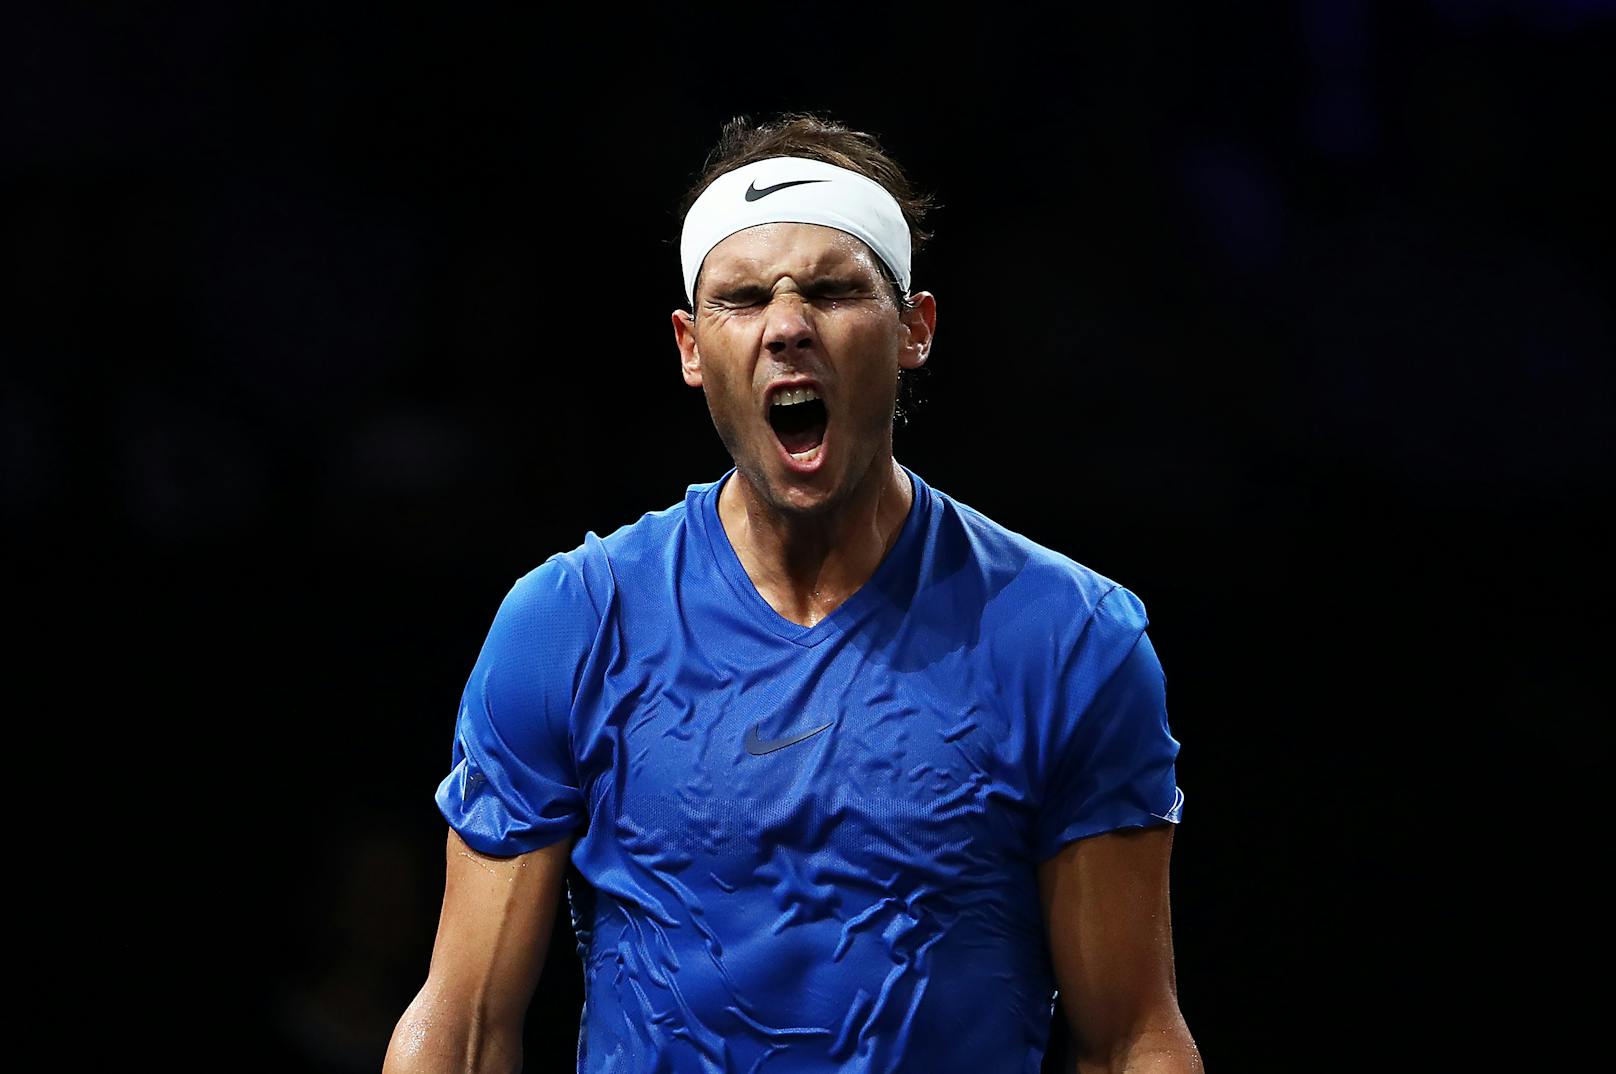 Der spanische Tennispieler Rafael Nadal schließte bereits fünf seiner Saisonen als Weltranglistenerster ab.